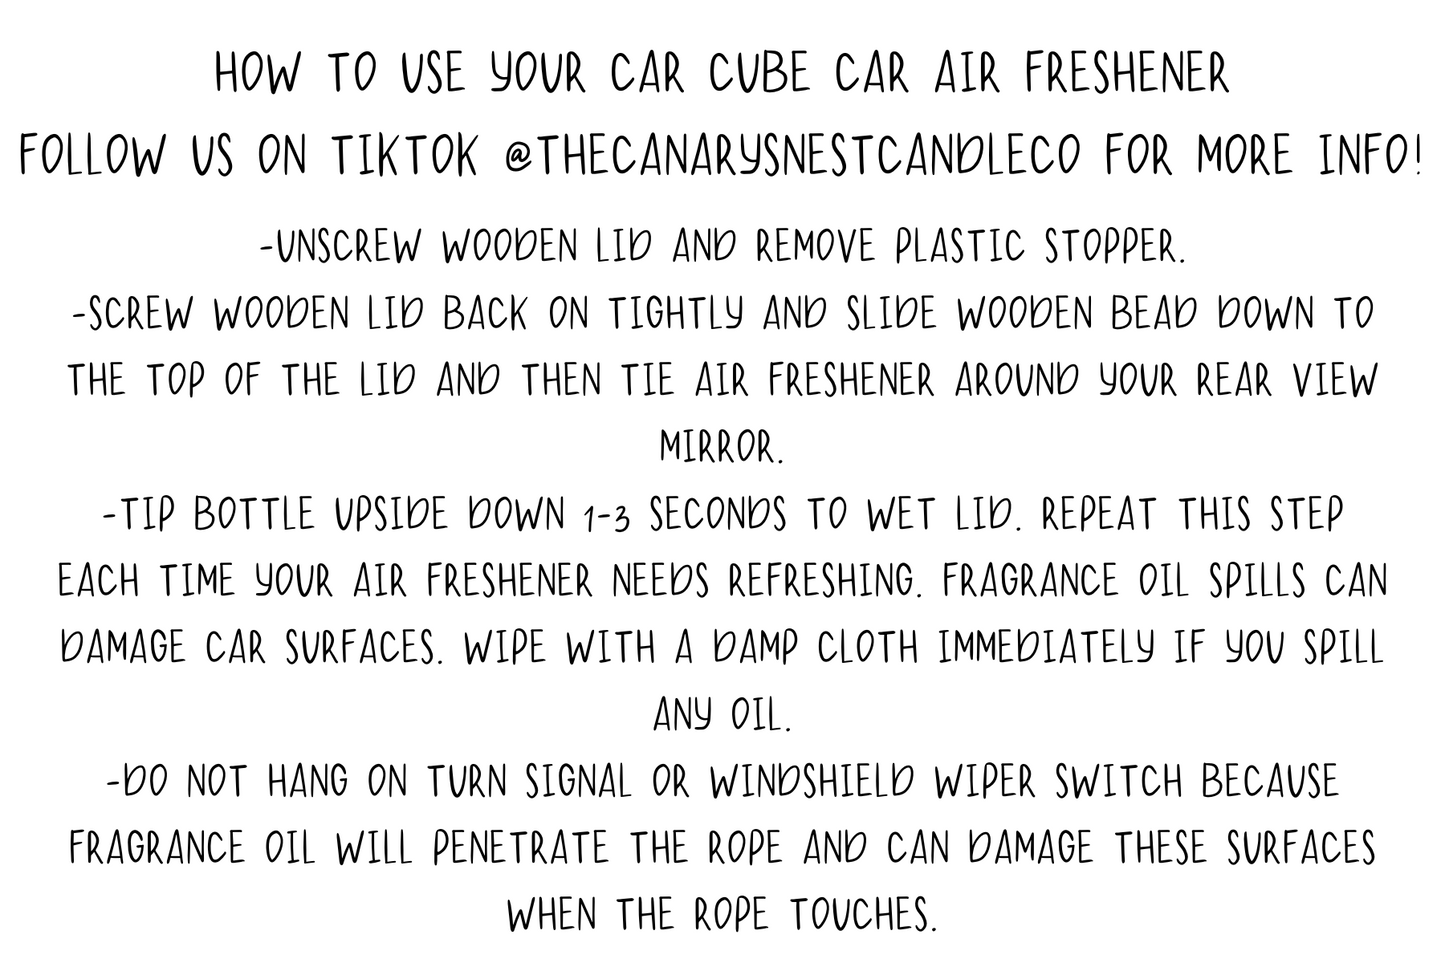 Car Cube Car Air Freshener